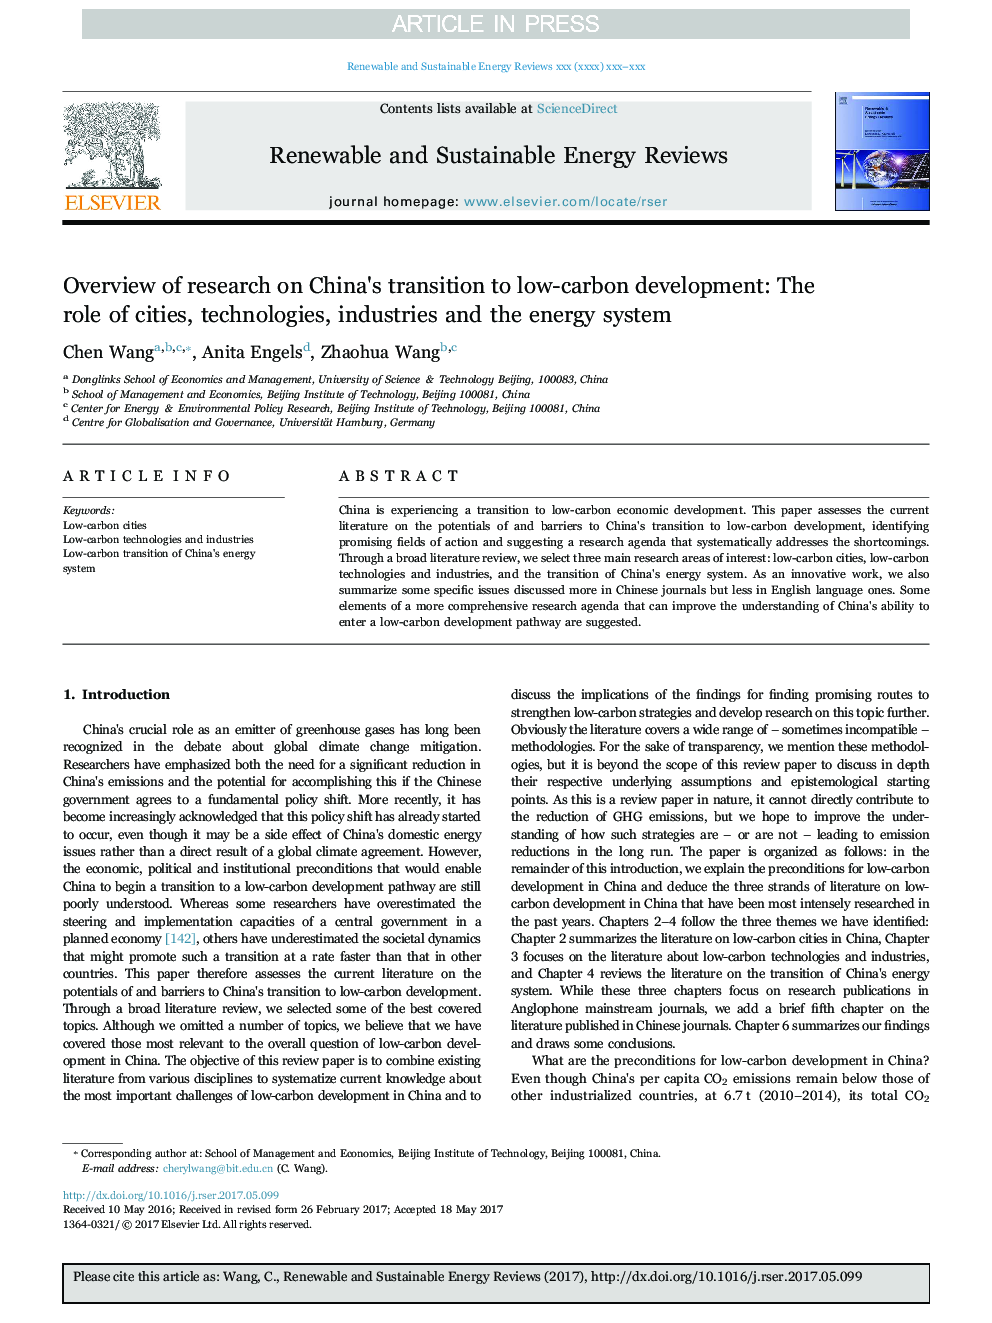 بررسی اجمالی تحقیق در مورد انتقال چین به توسعه کم کربن: نقش شهرها، فن آوری ها، صنایع و سیستم انرژی